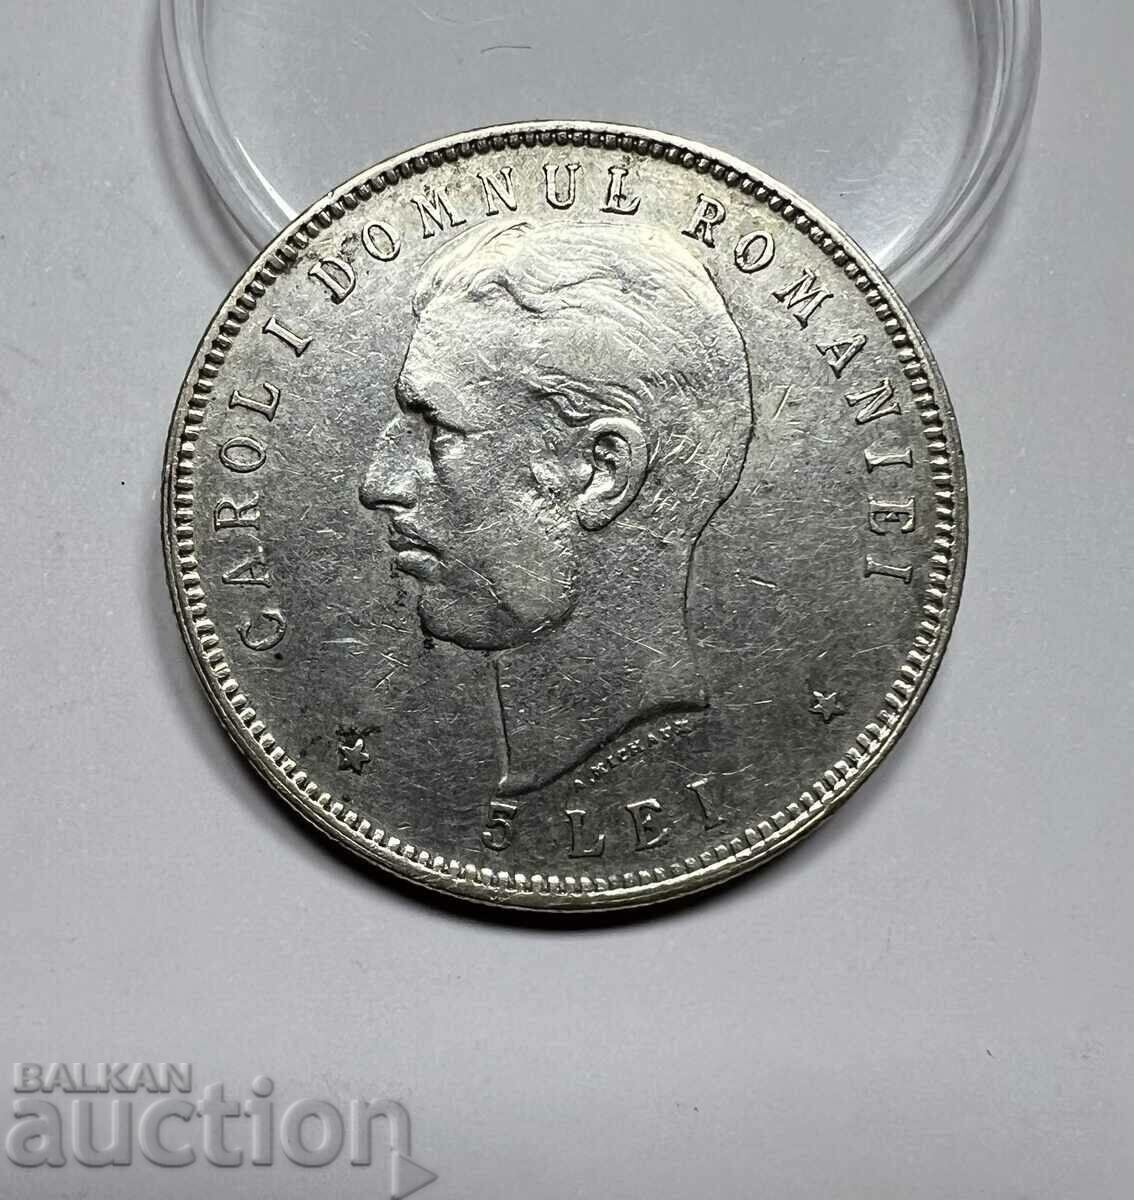 ΣΠΑΝΙΟ ασημένιο νόμισμα Ρουμανίας 5 LEI 1866-1906 Carol I